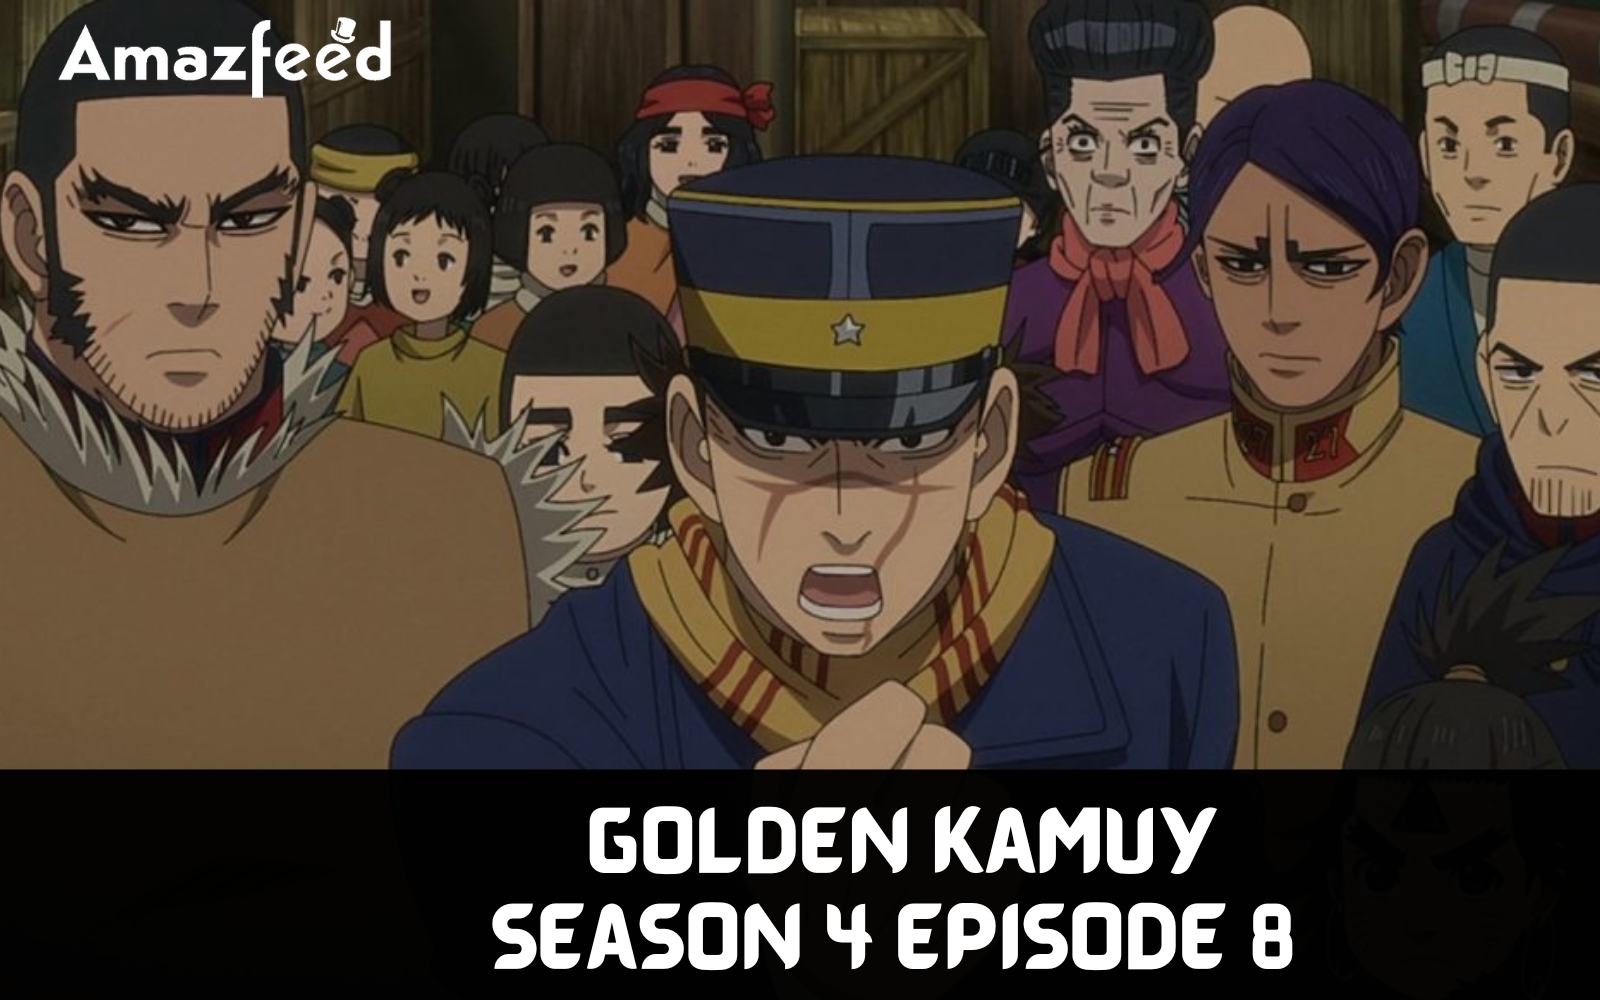 Golden Kamuy season 4